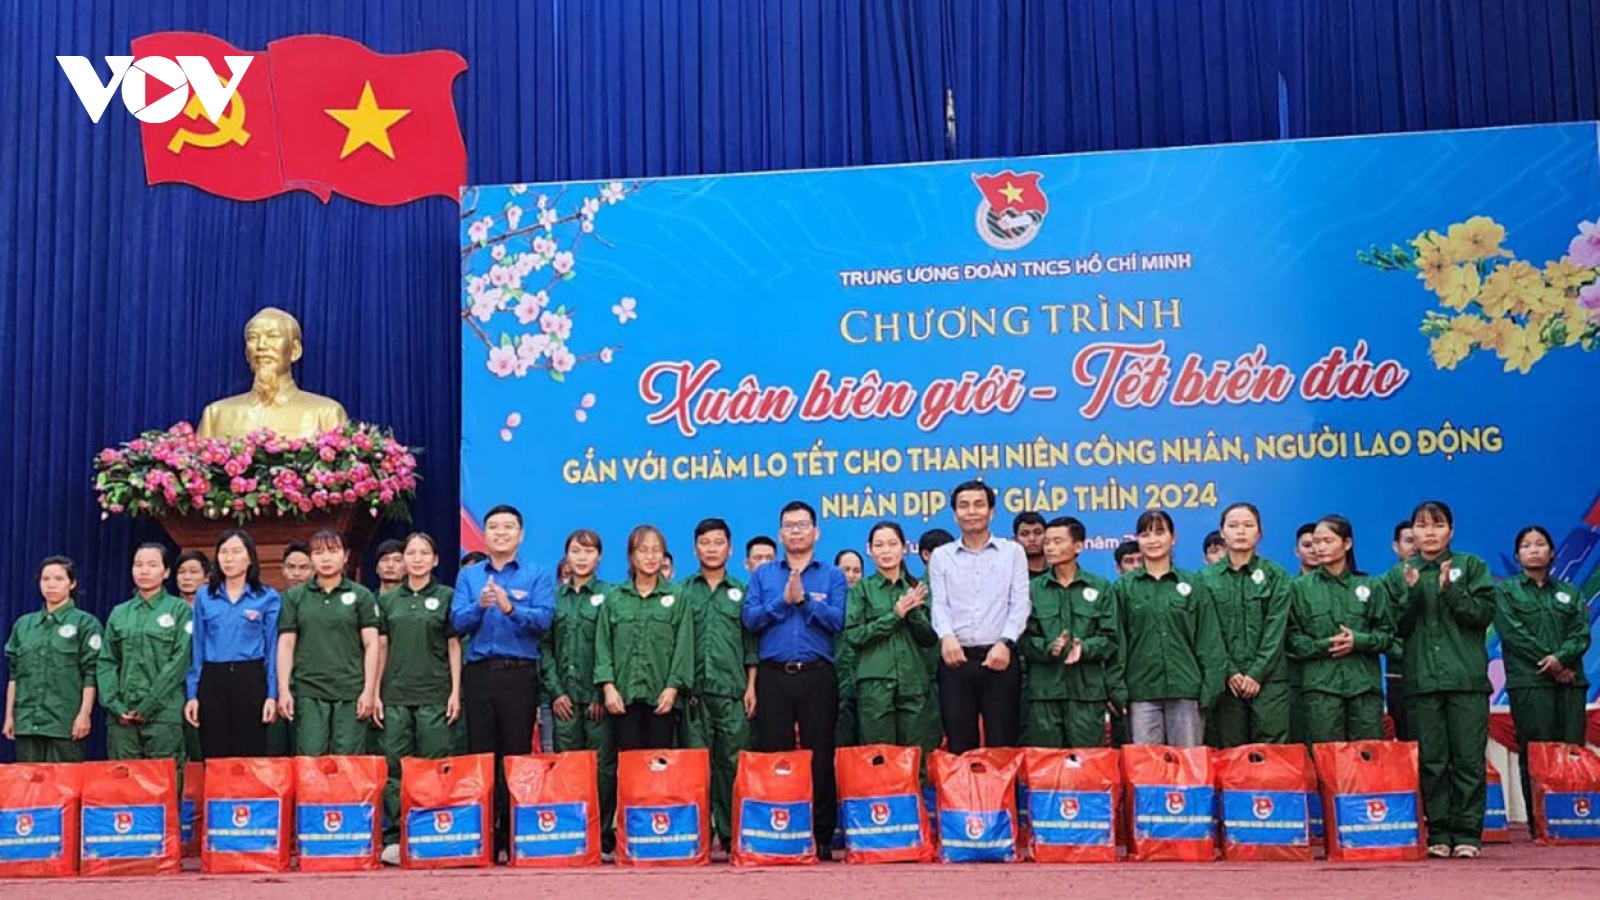 Trung ương Đoàn đưa Tết đến 2 huyện biên giới tỉnh Kon Tum